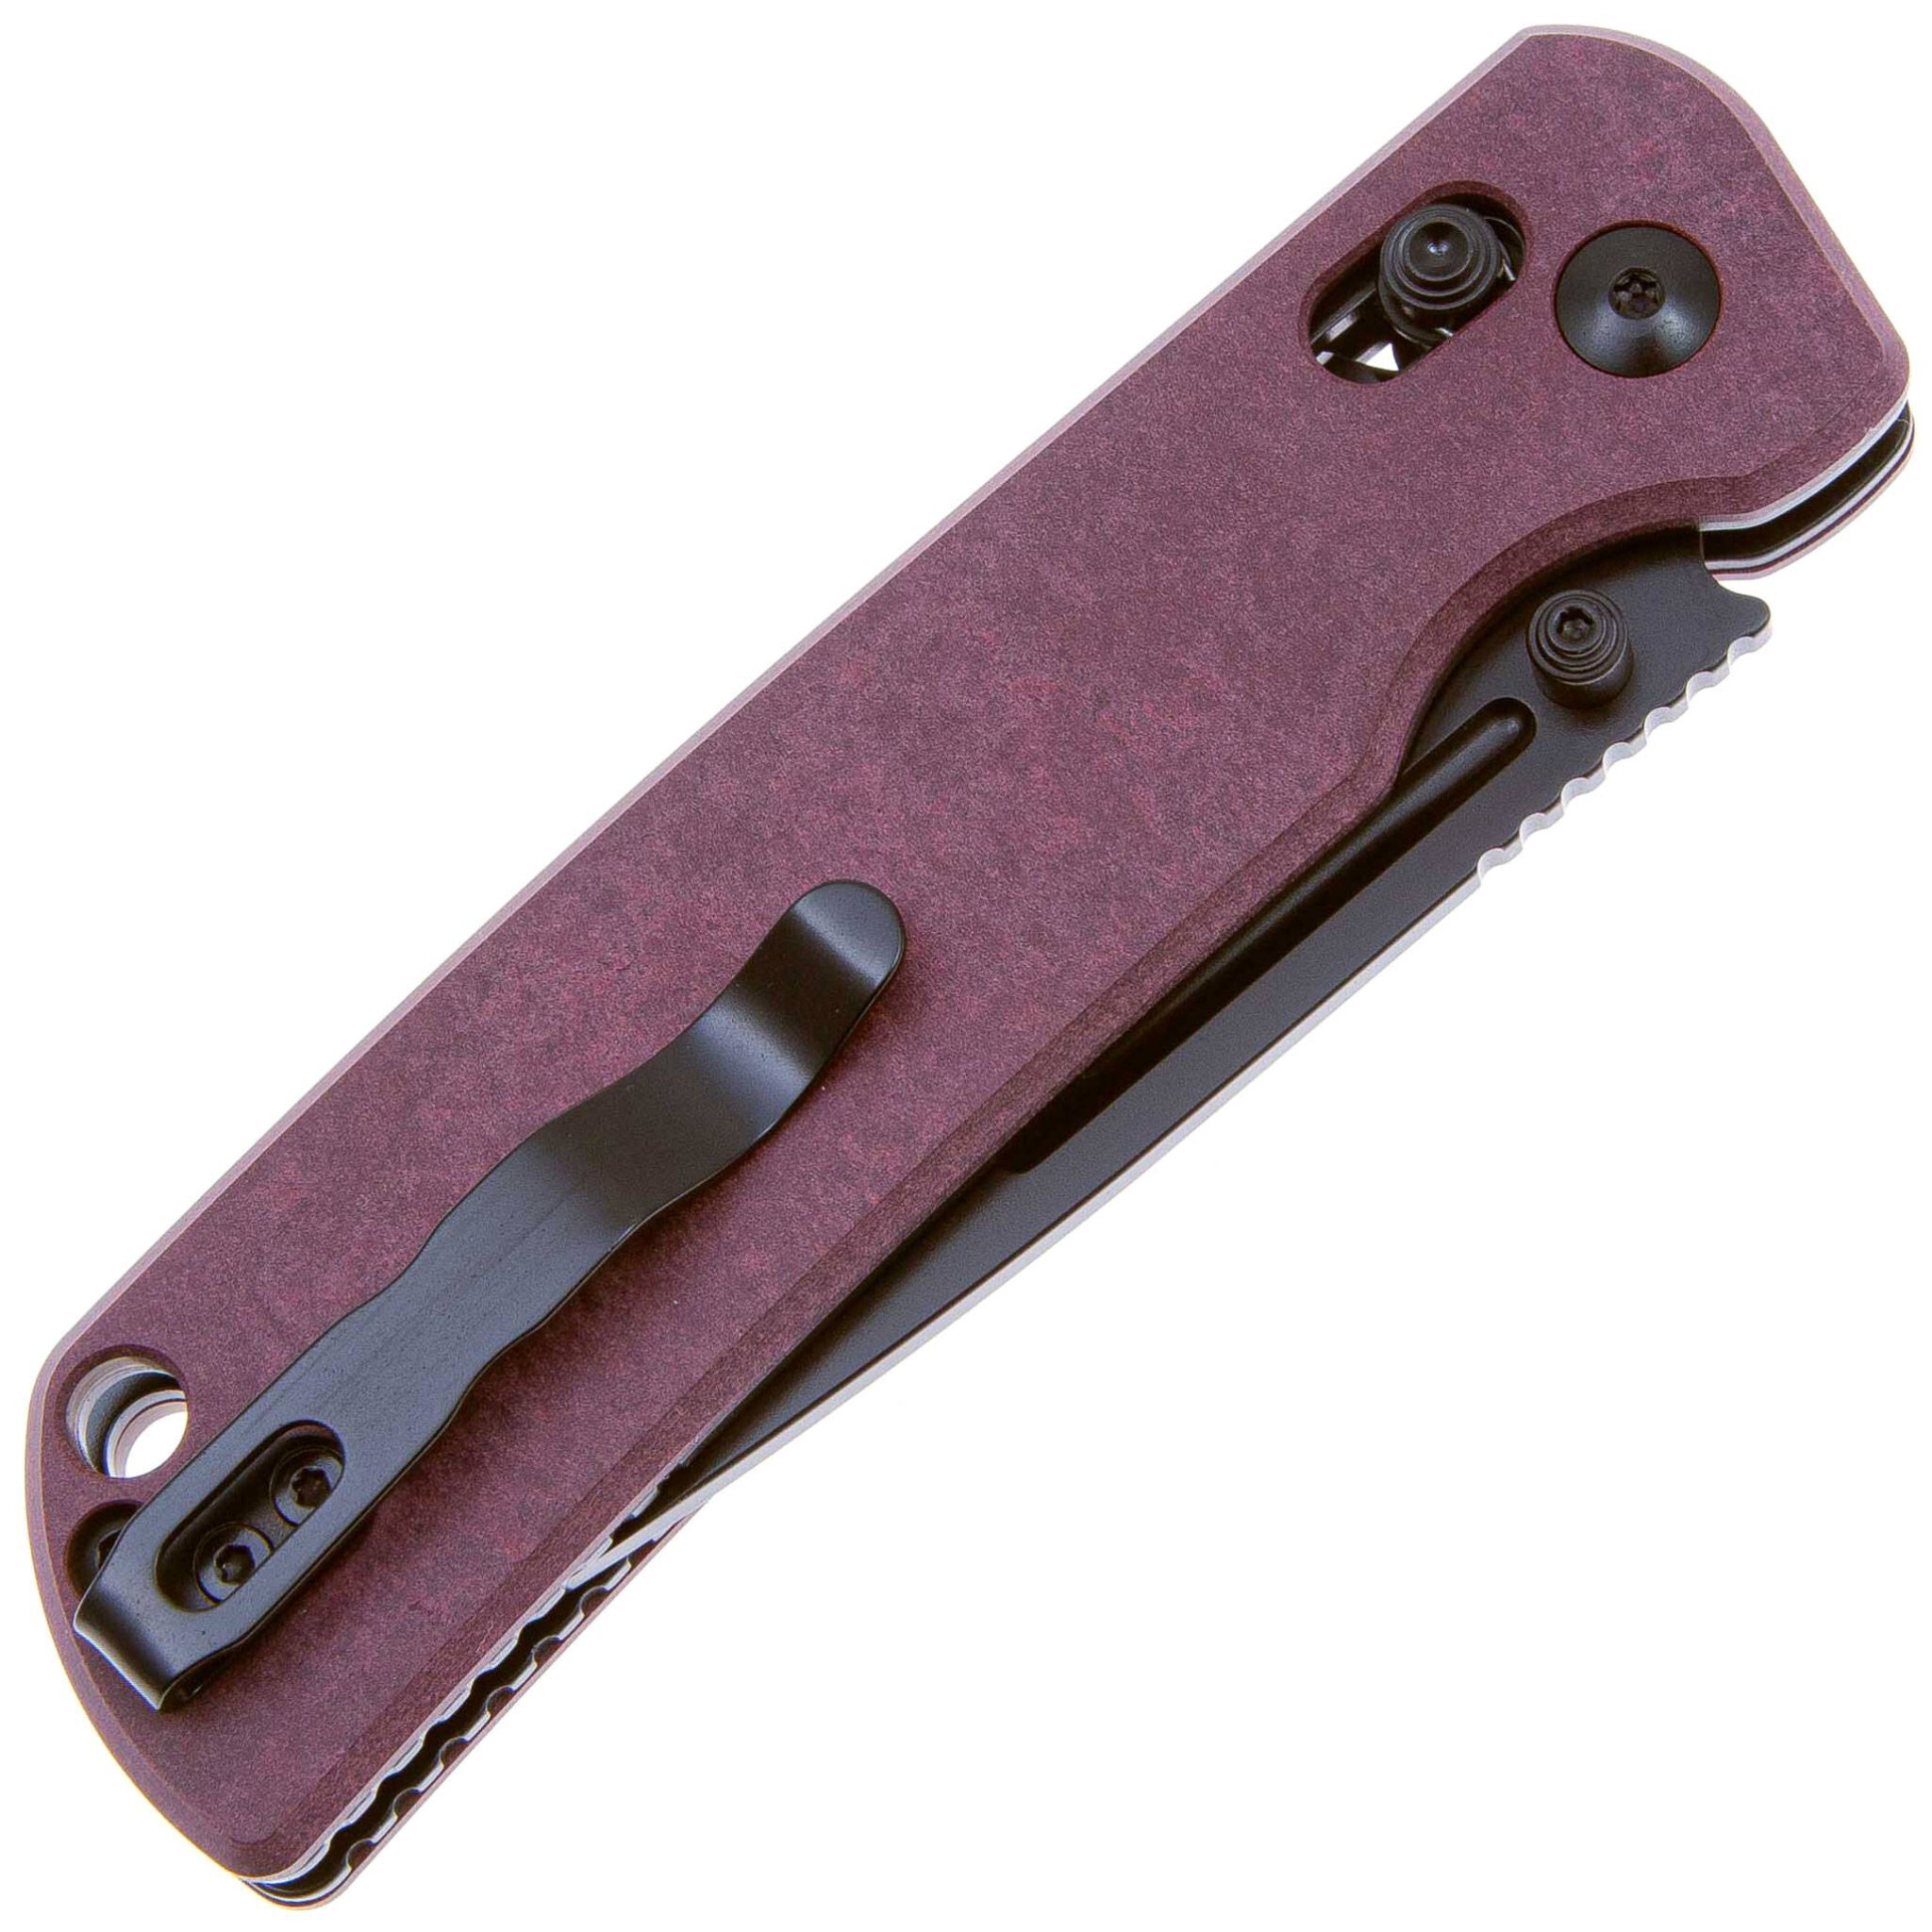 Складной нож Kizer Escort, сталь 154CM, рукоять Richlite, фиолетовый - фото 4